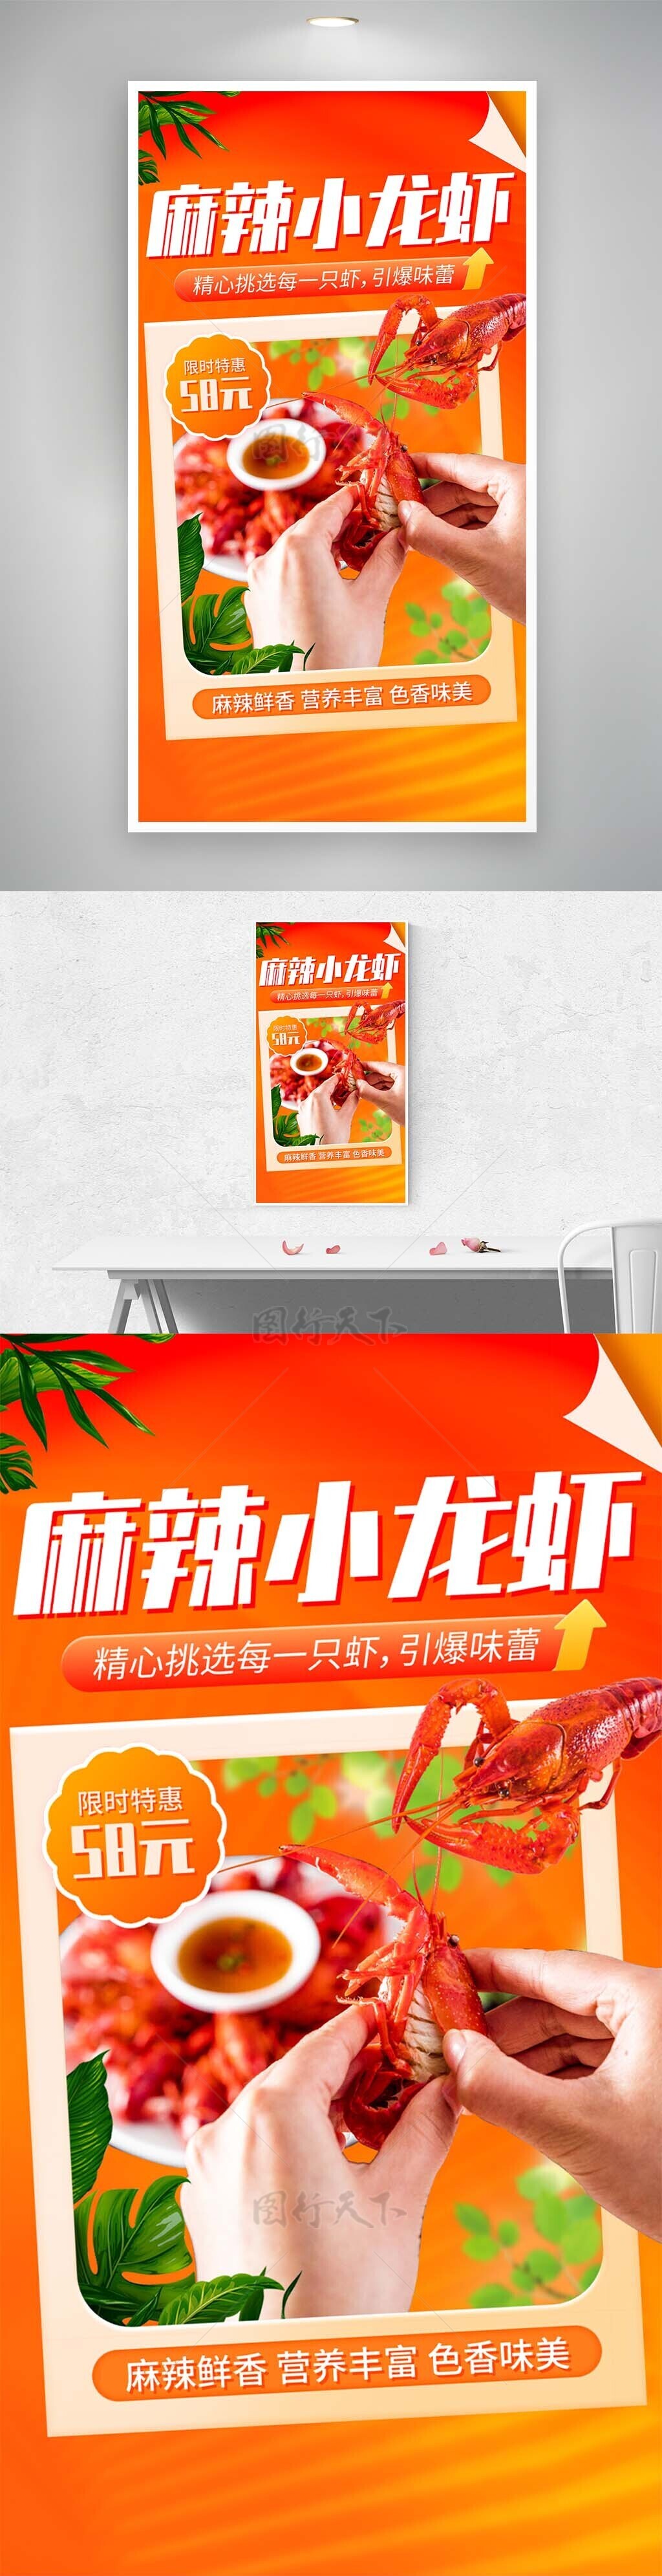 麻辣小龙虾引爆味蕾橙色背景海报